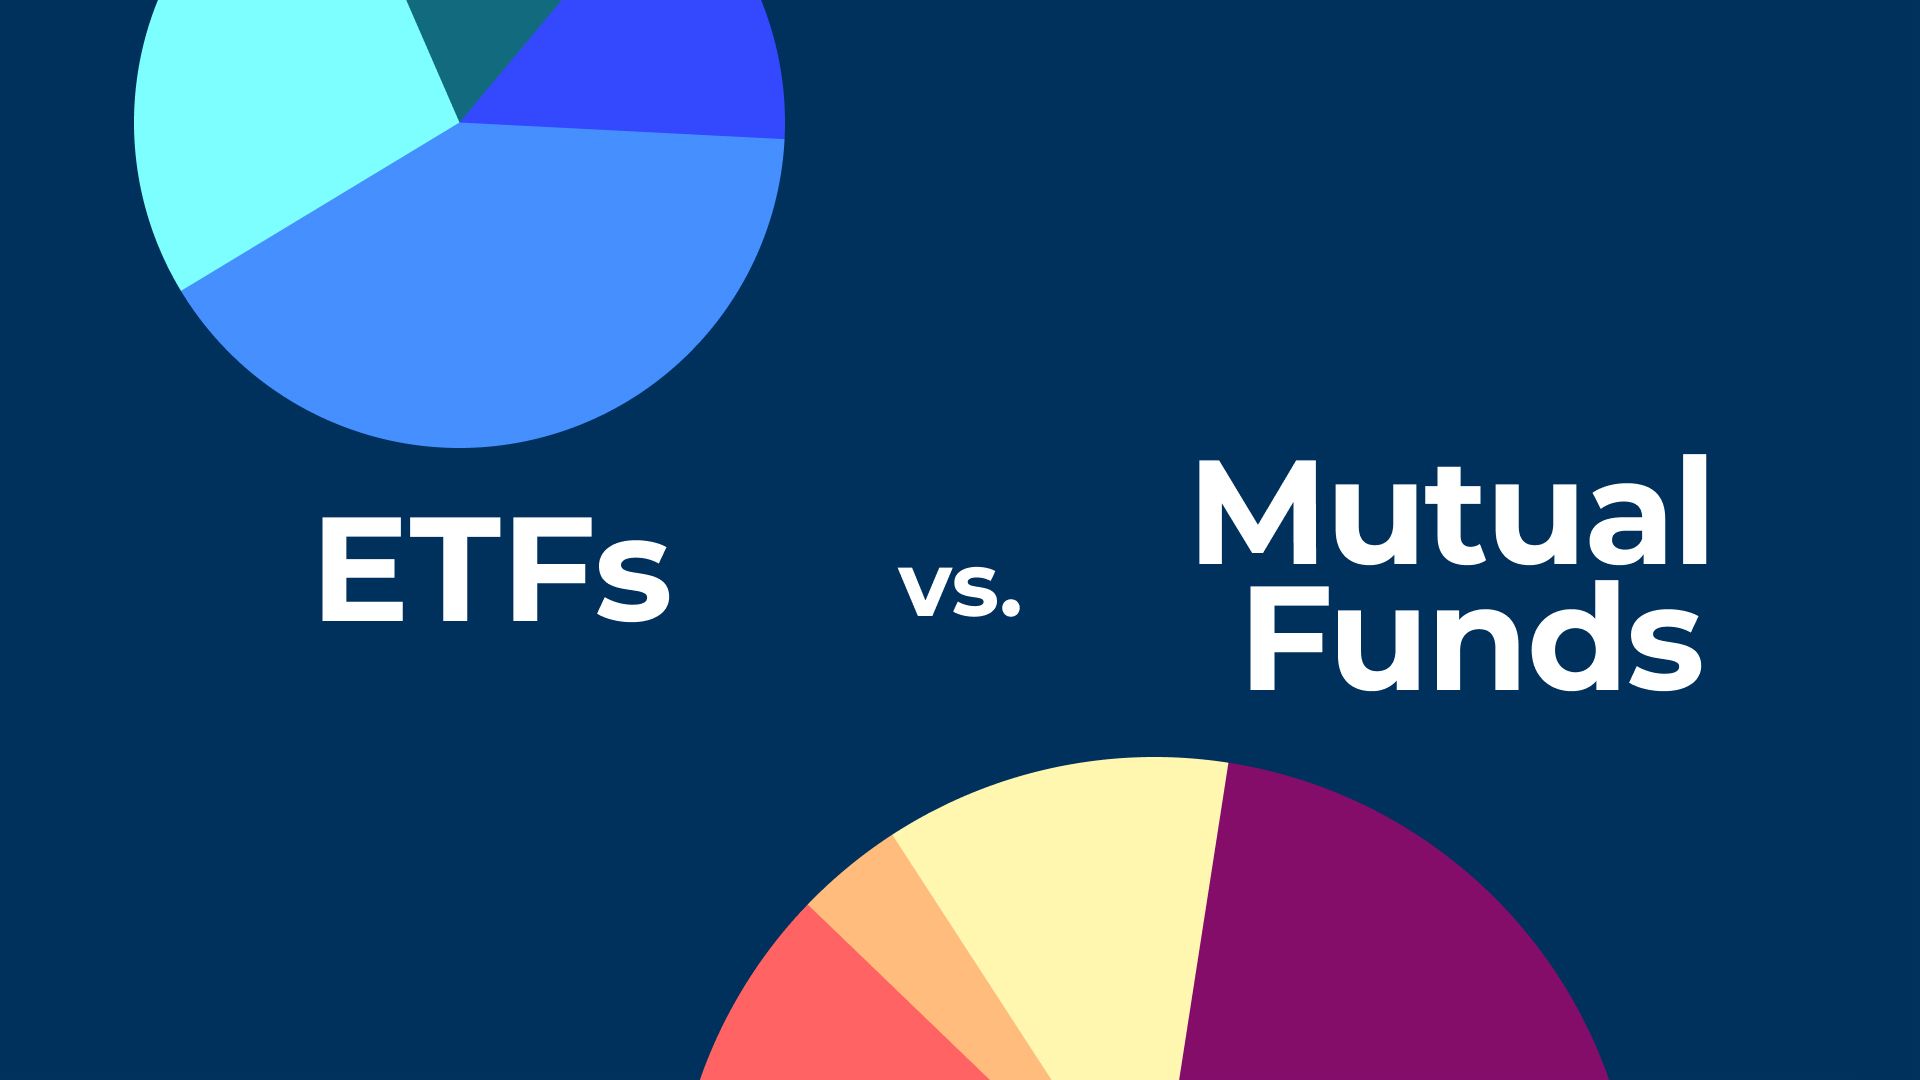 ETfs vs Mutual Funds